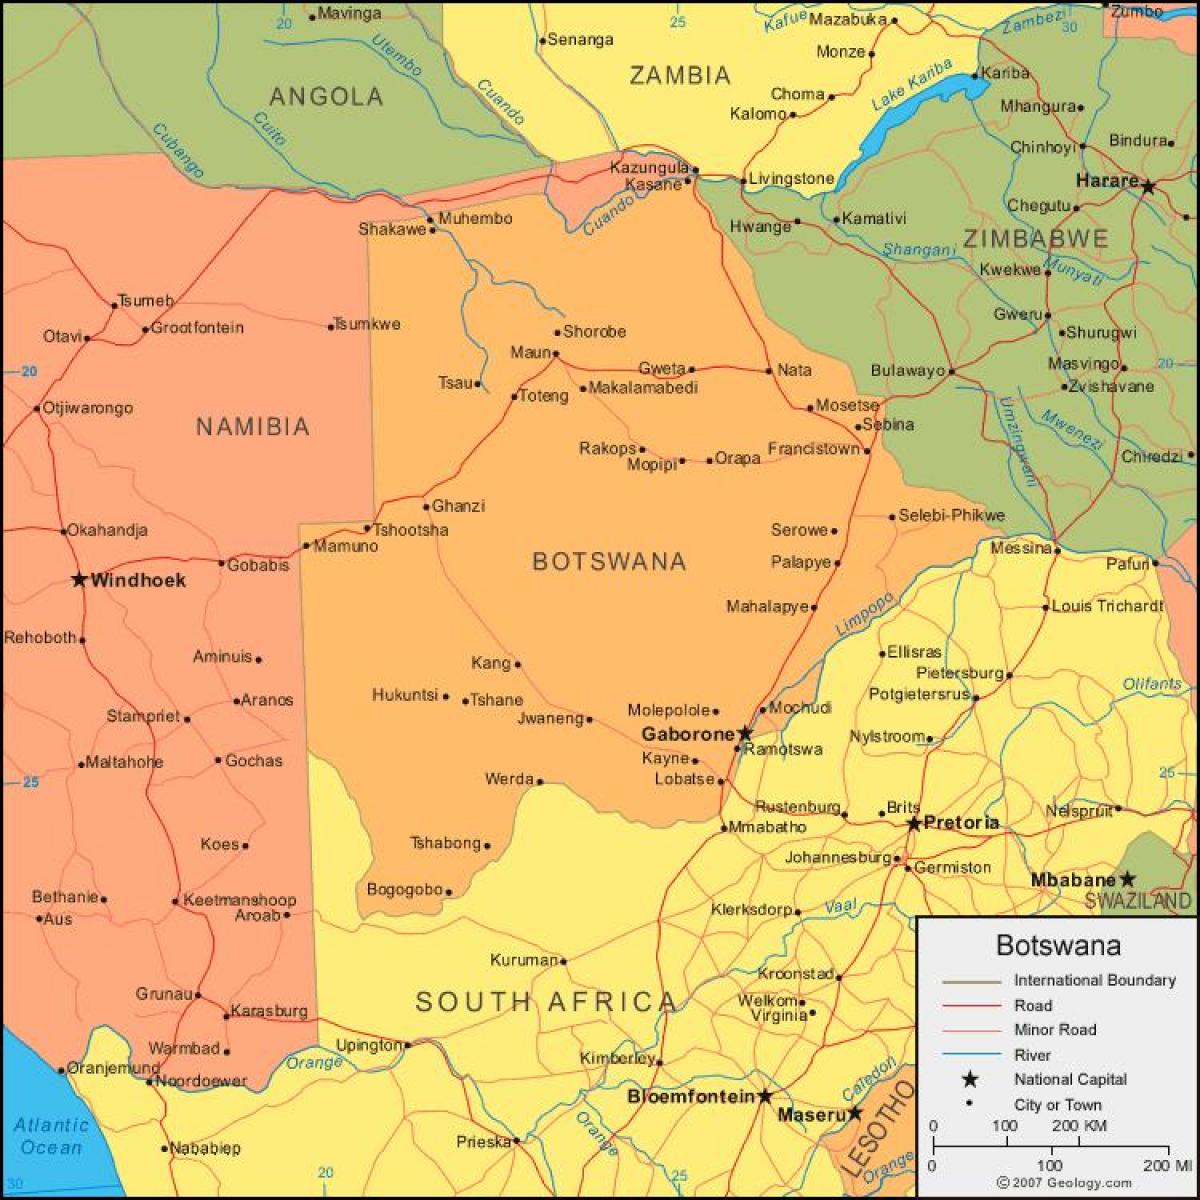 χάρτης της Μποτσουάνα που δείχνει όλα τα χωριά